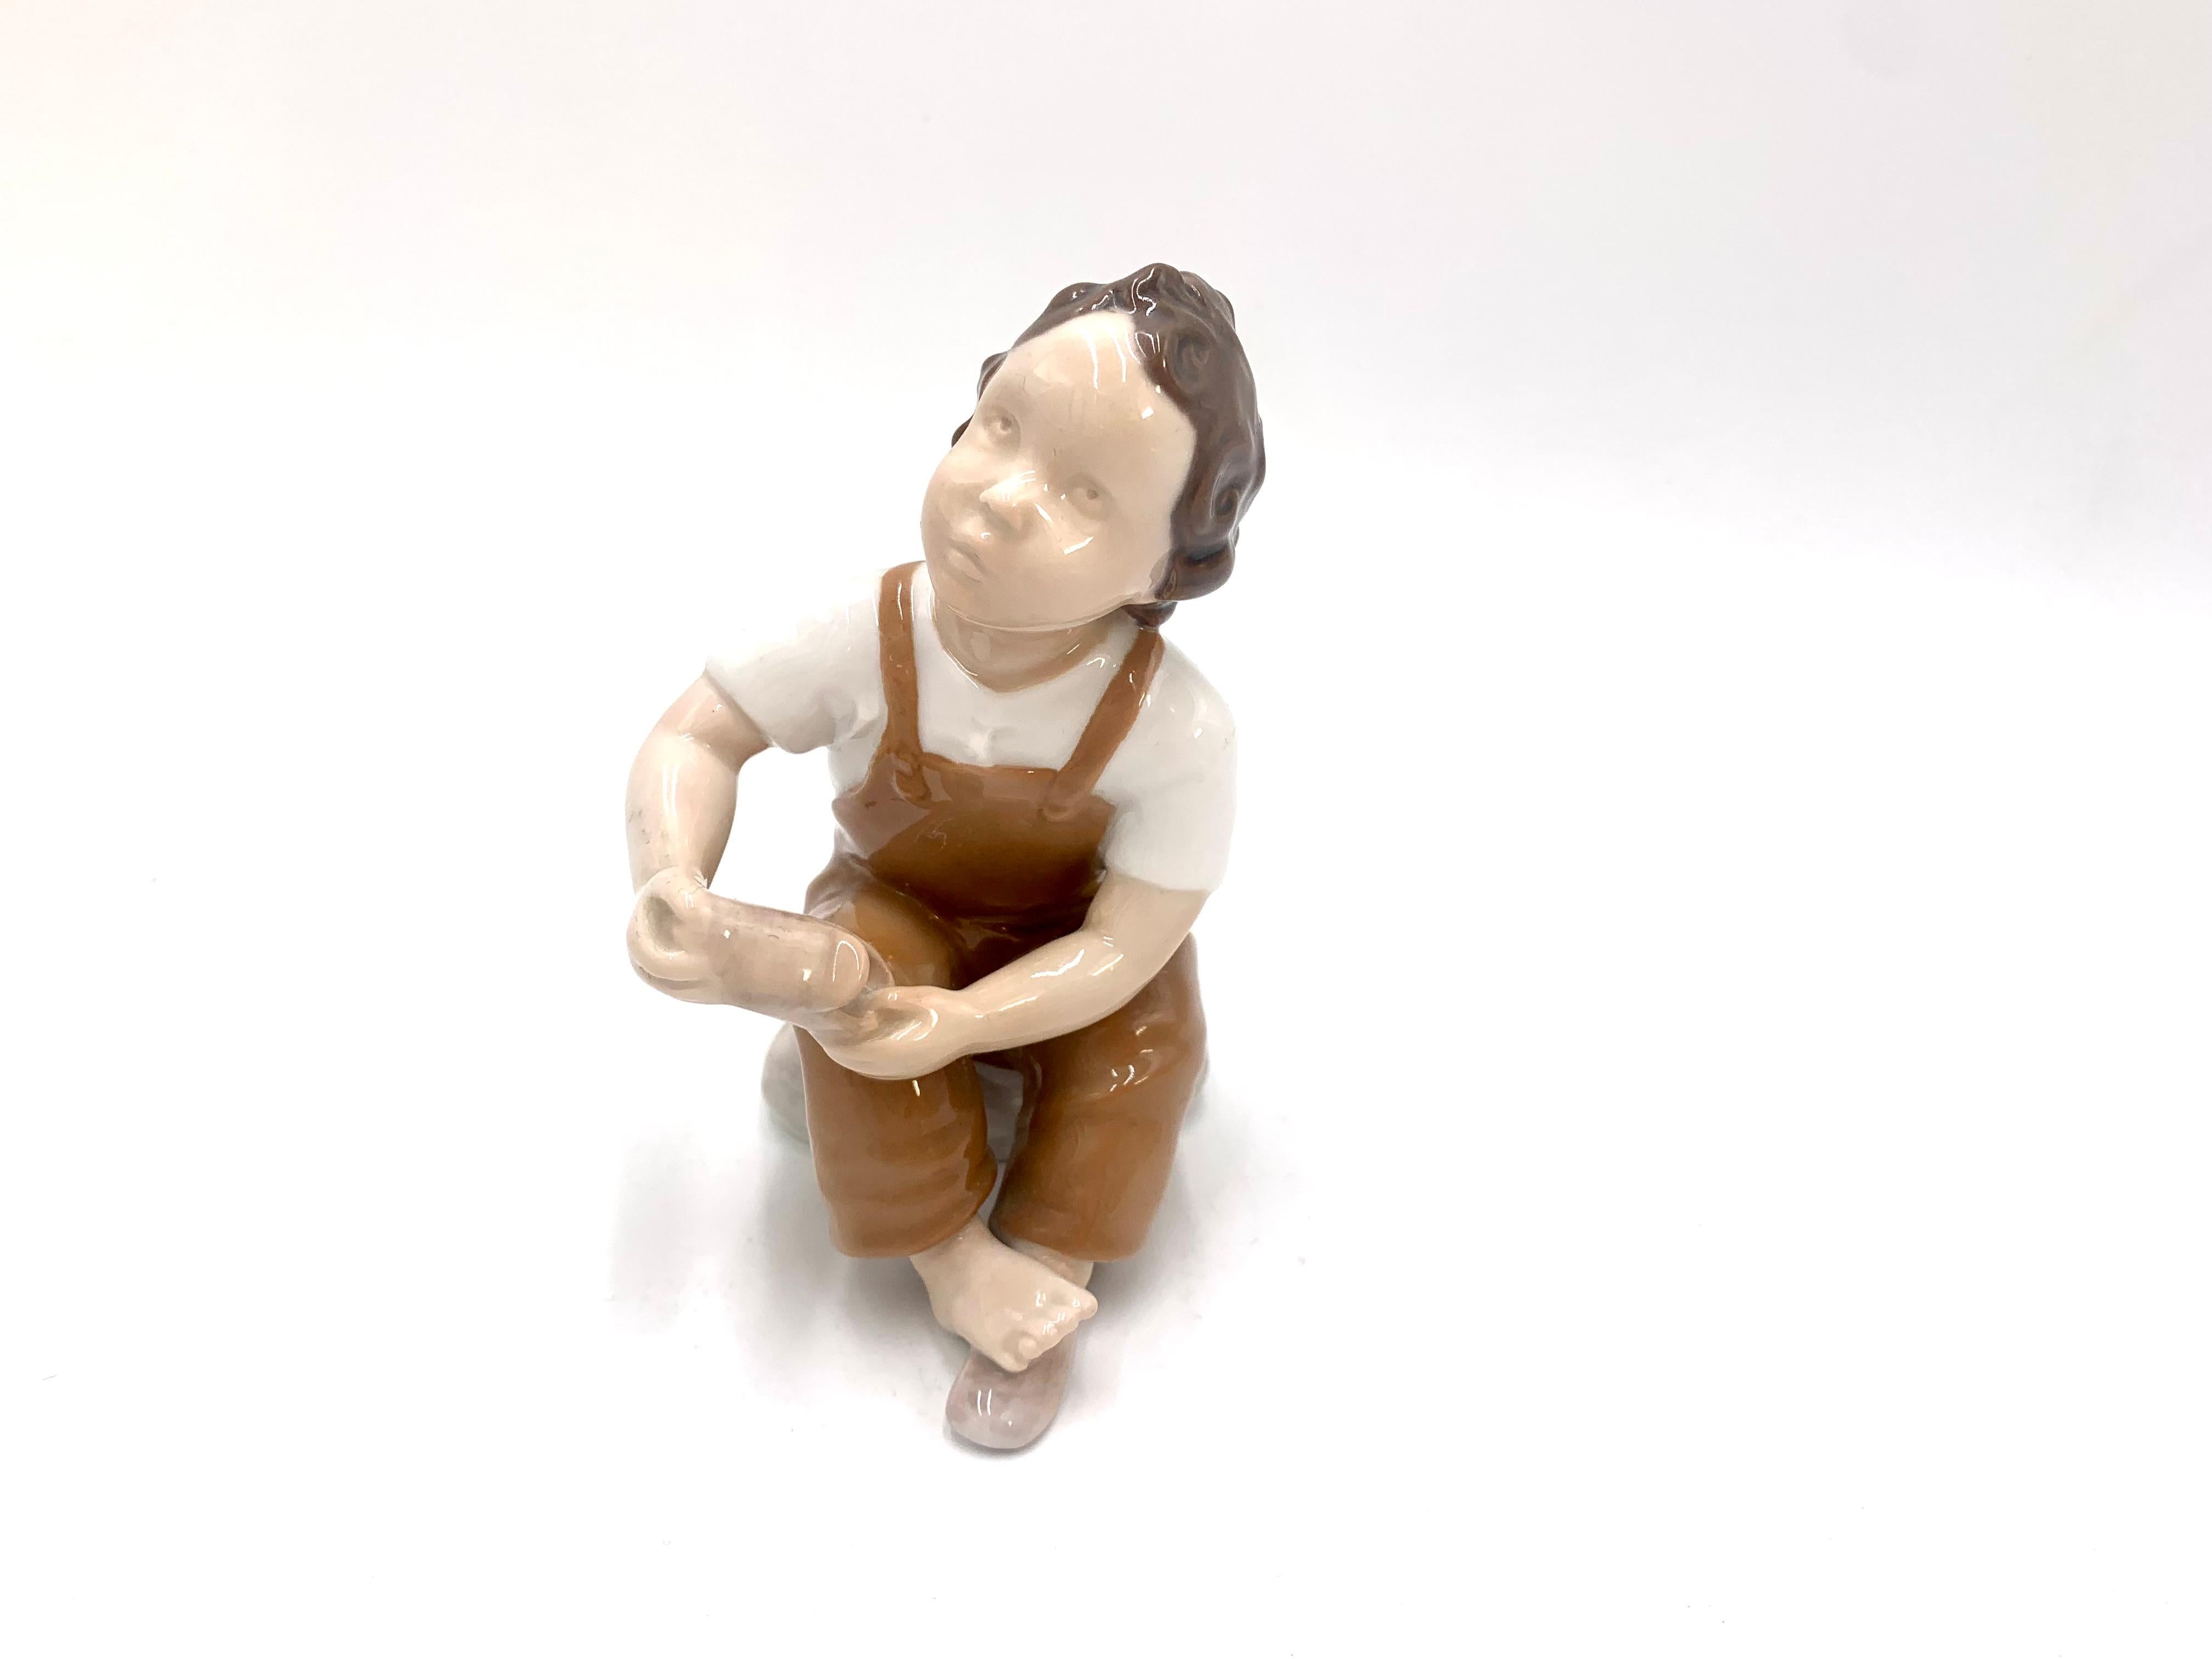 Porzellanfigur eines Jungen, der um Hilfe beim Anziehen seiner Schuhe bittet

Hergestellt in Dänemark von Bing & Grondahl

Produziert in den Jahren 1958-1962

Modellnummer # 2275

Sehr guter Zustand, keine Schäden

Maße: Höhe 13,5 cm